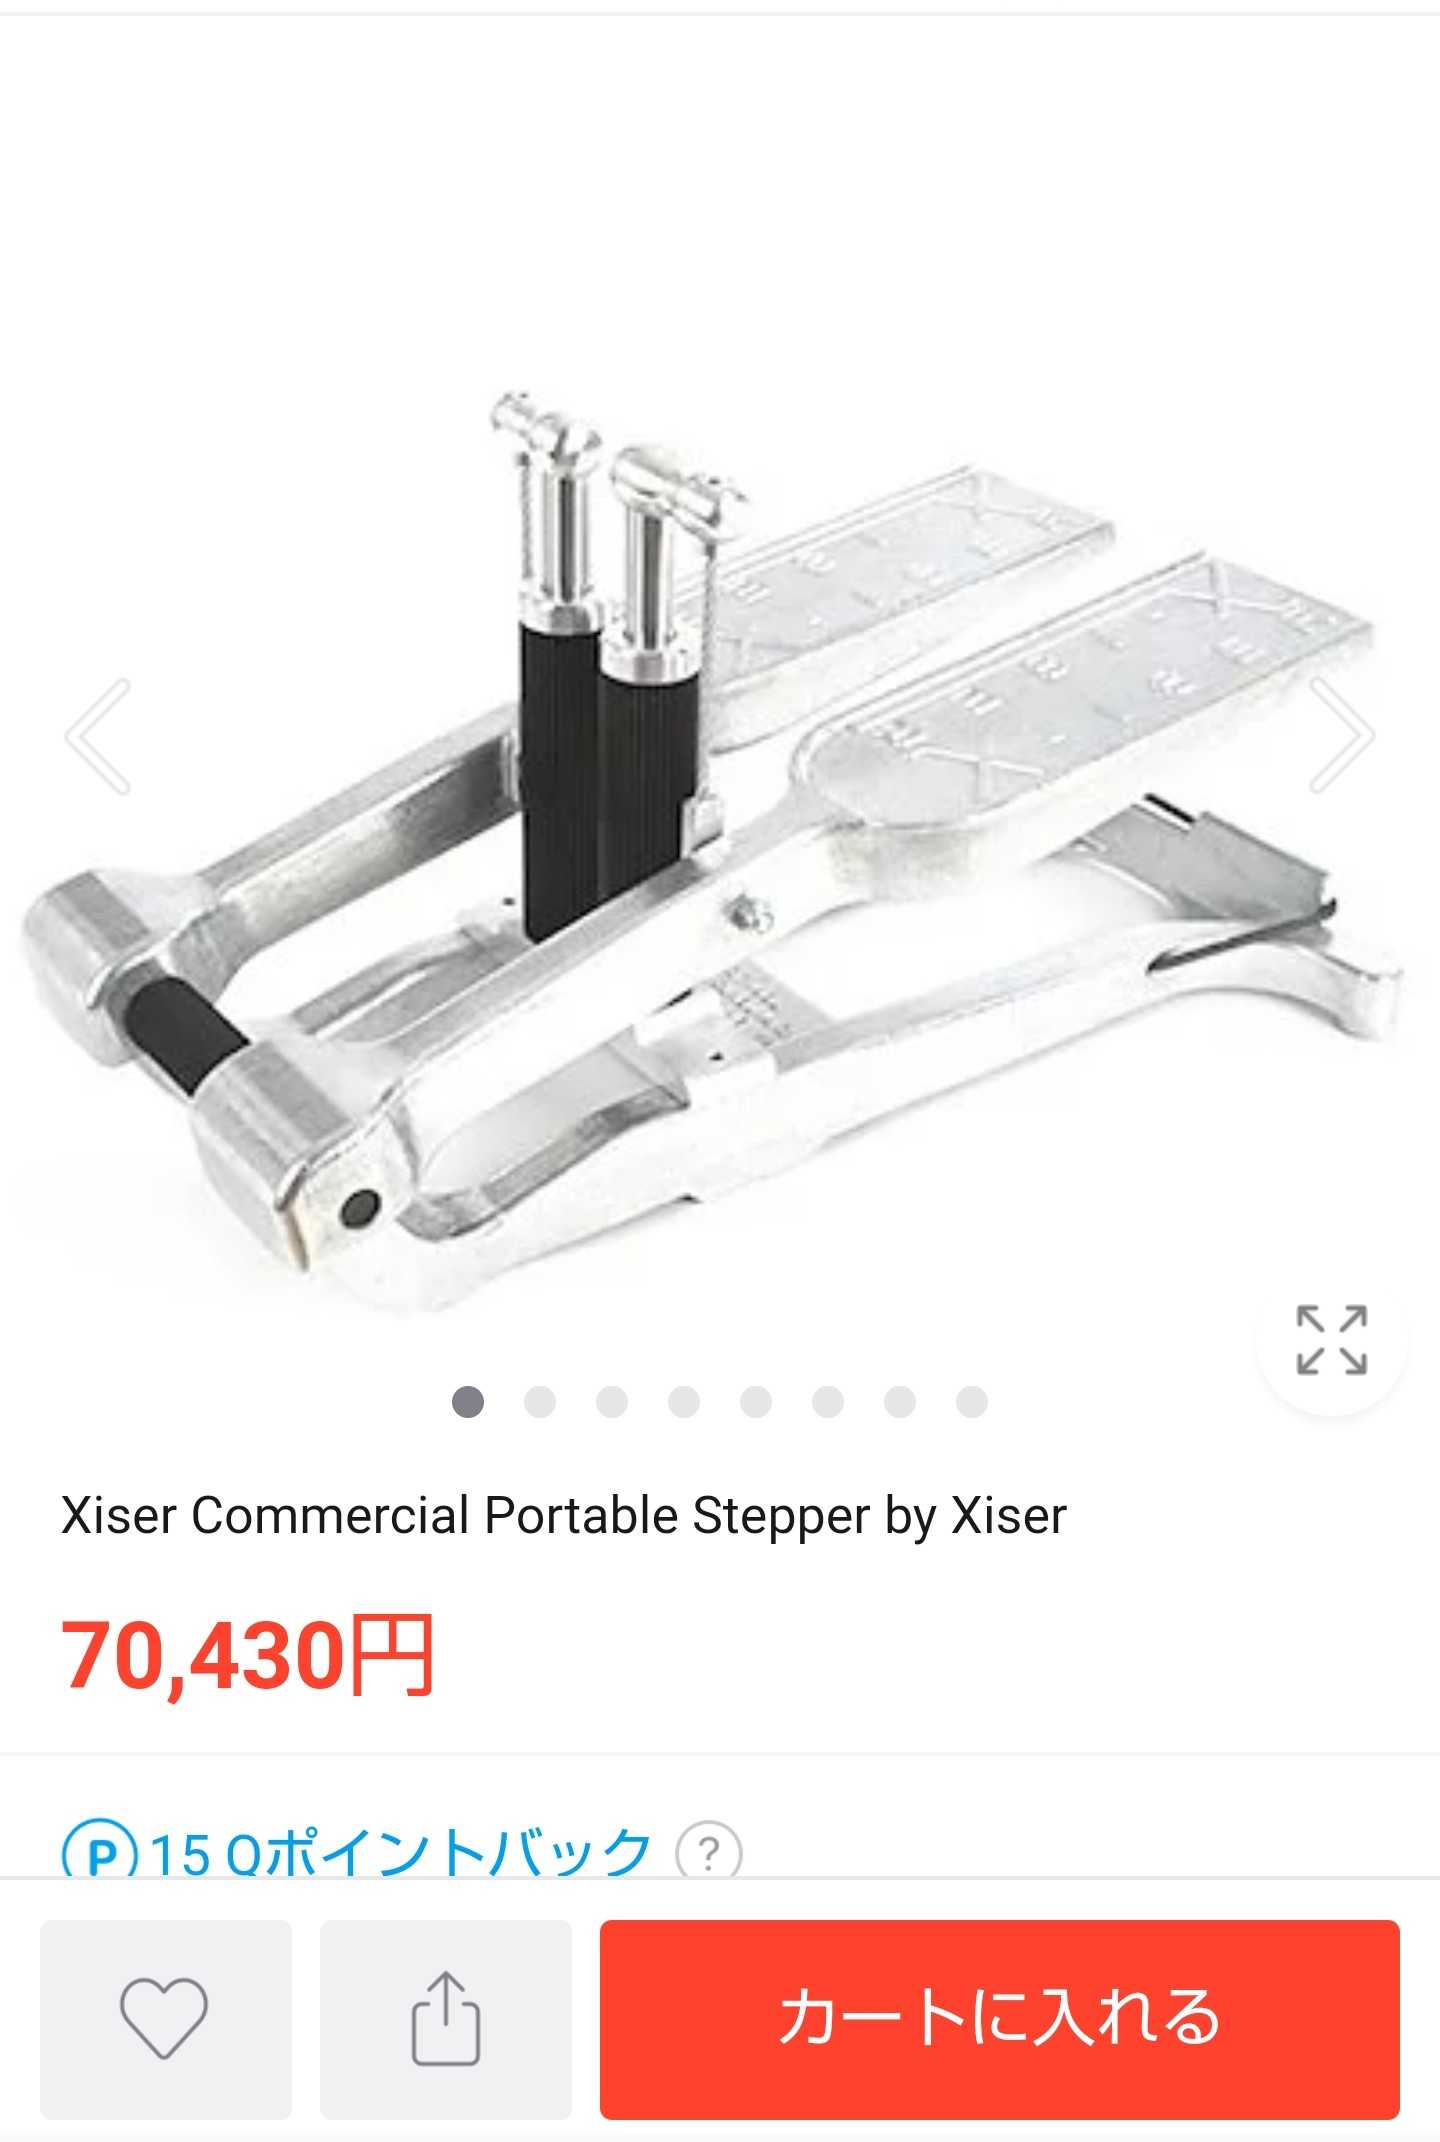 8周年記念イベントが Xiser Commercial Portable Stepper by